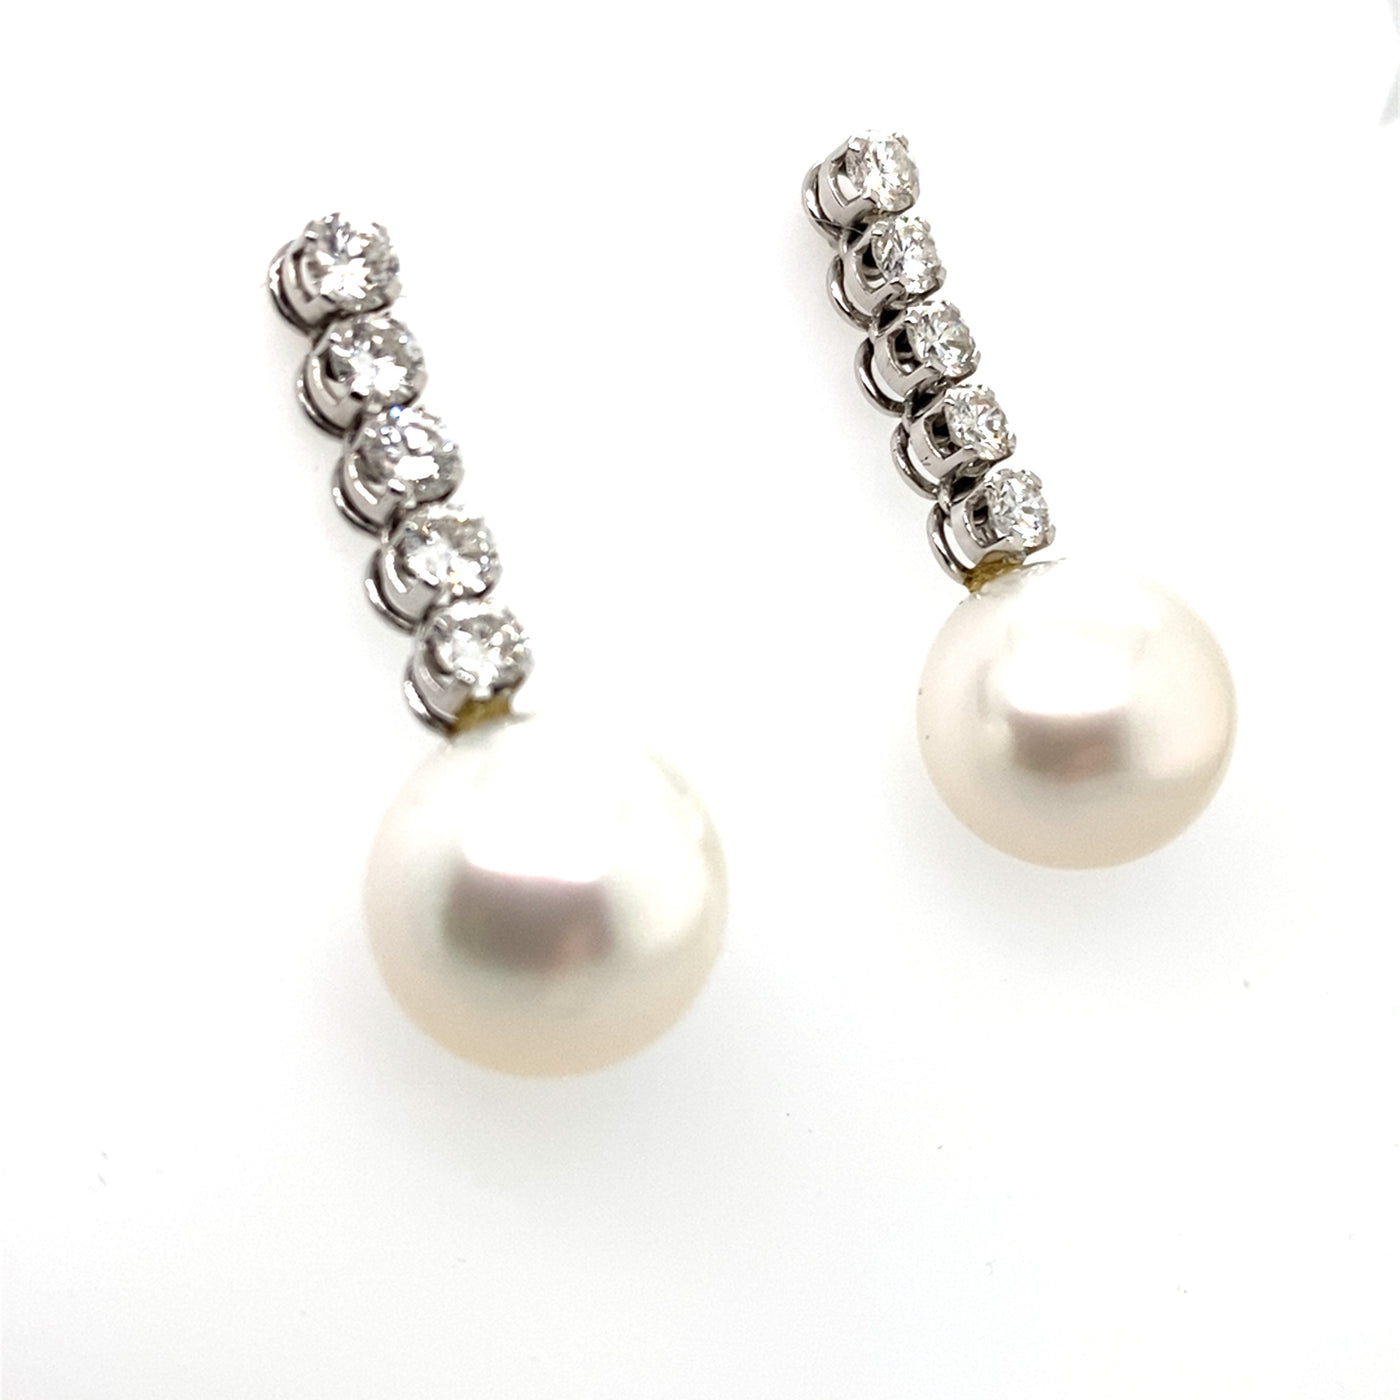 Drop of Pearls - Exquisite Perlohrringe mit Diamanten